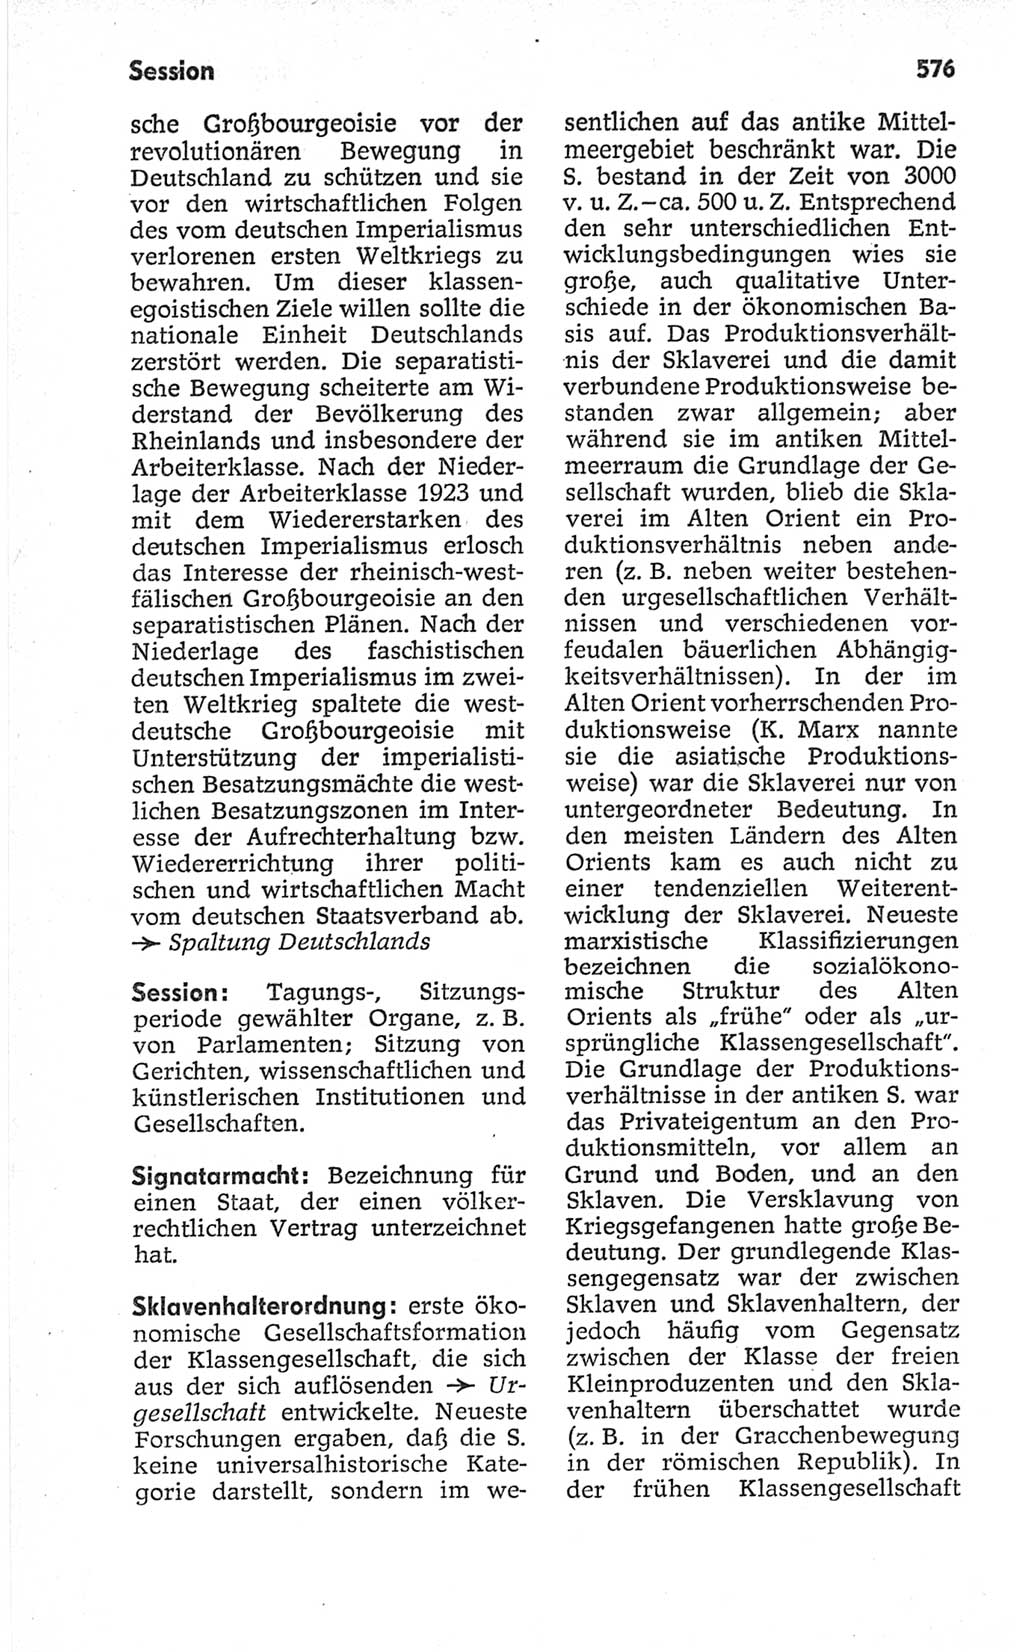 Kleines politisches Wörterbuch [Deutsche Demokratische Republik (DDR)] 1967, Seite 576 (Kl. pol. Wb. DDR 1967, S. 576)